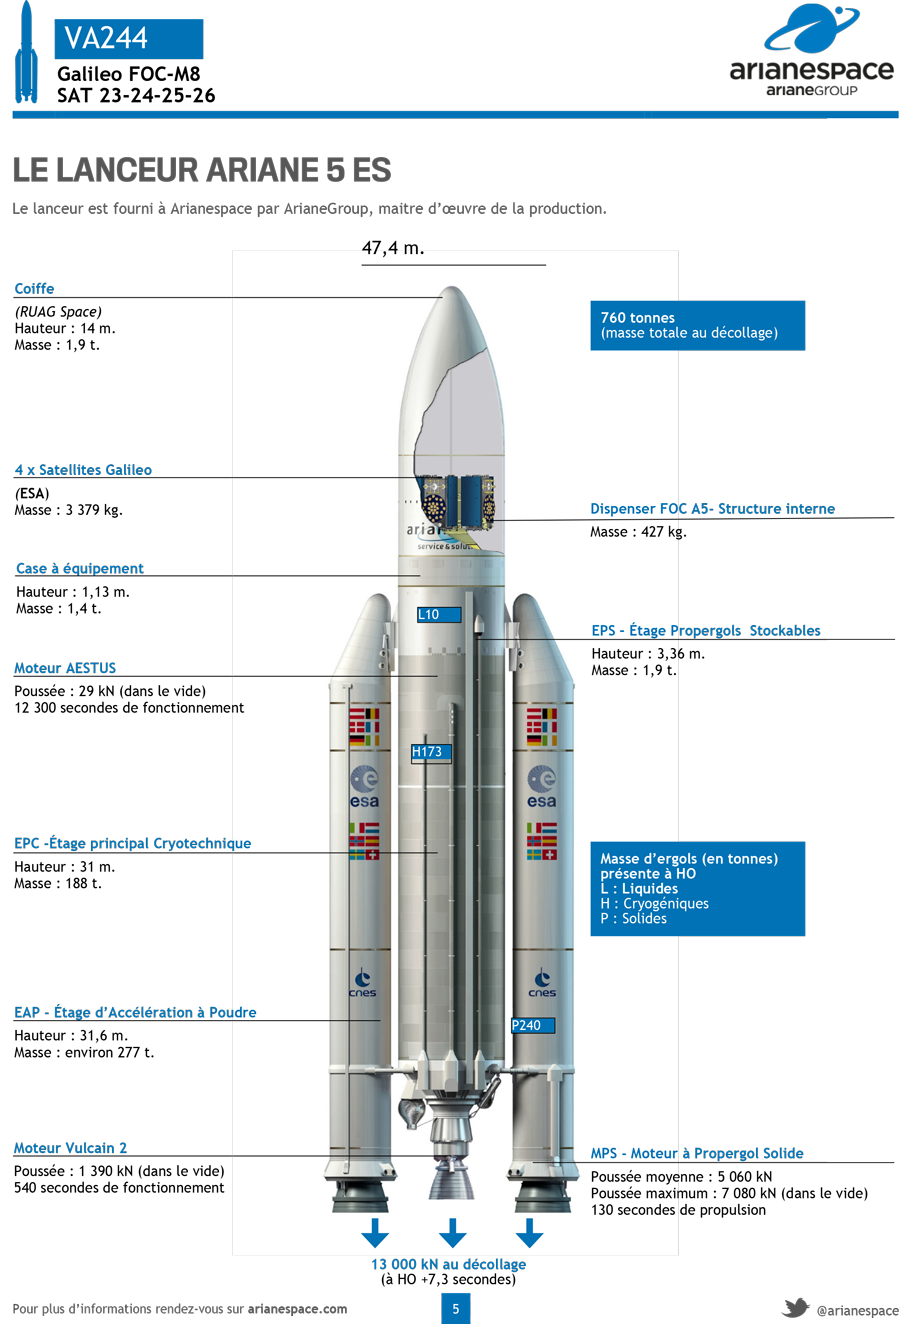 Lanceur Ariane 5 ES - Fiche technique